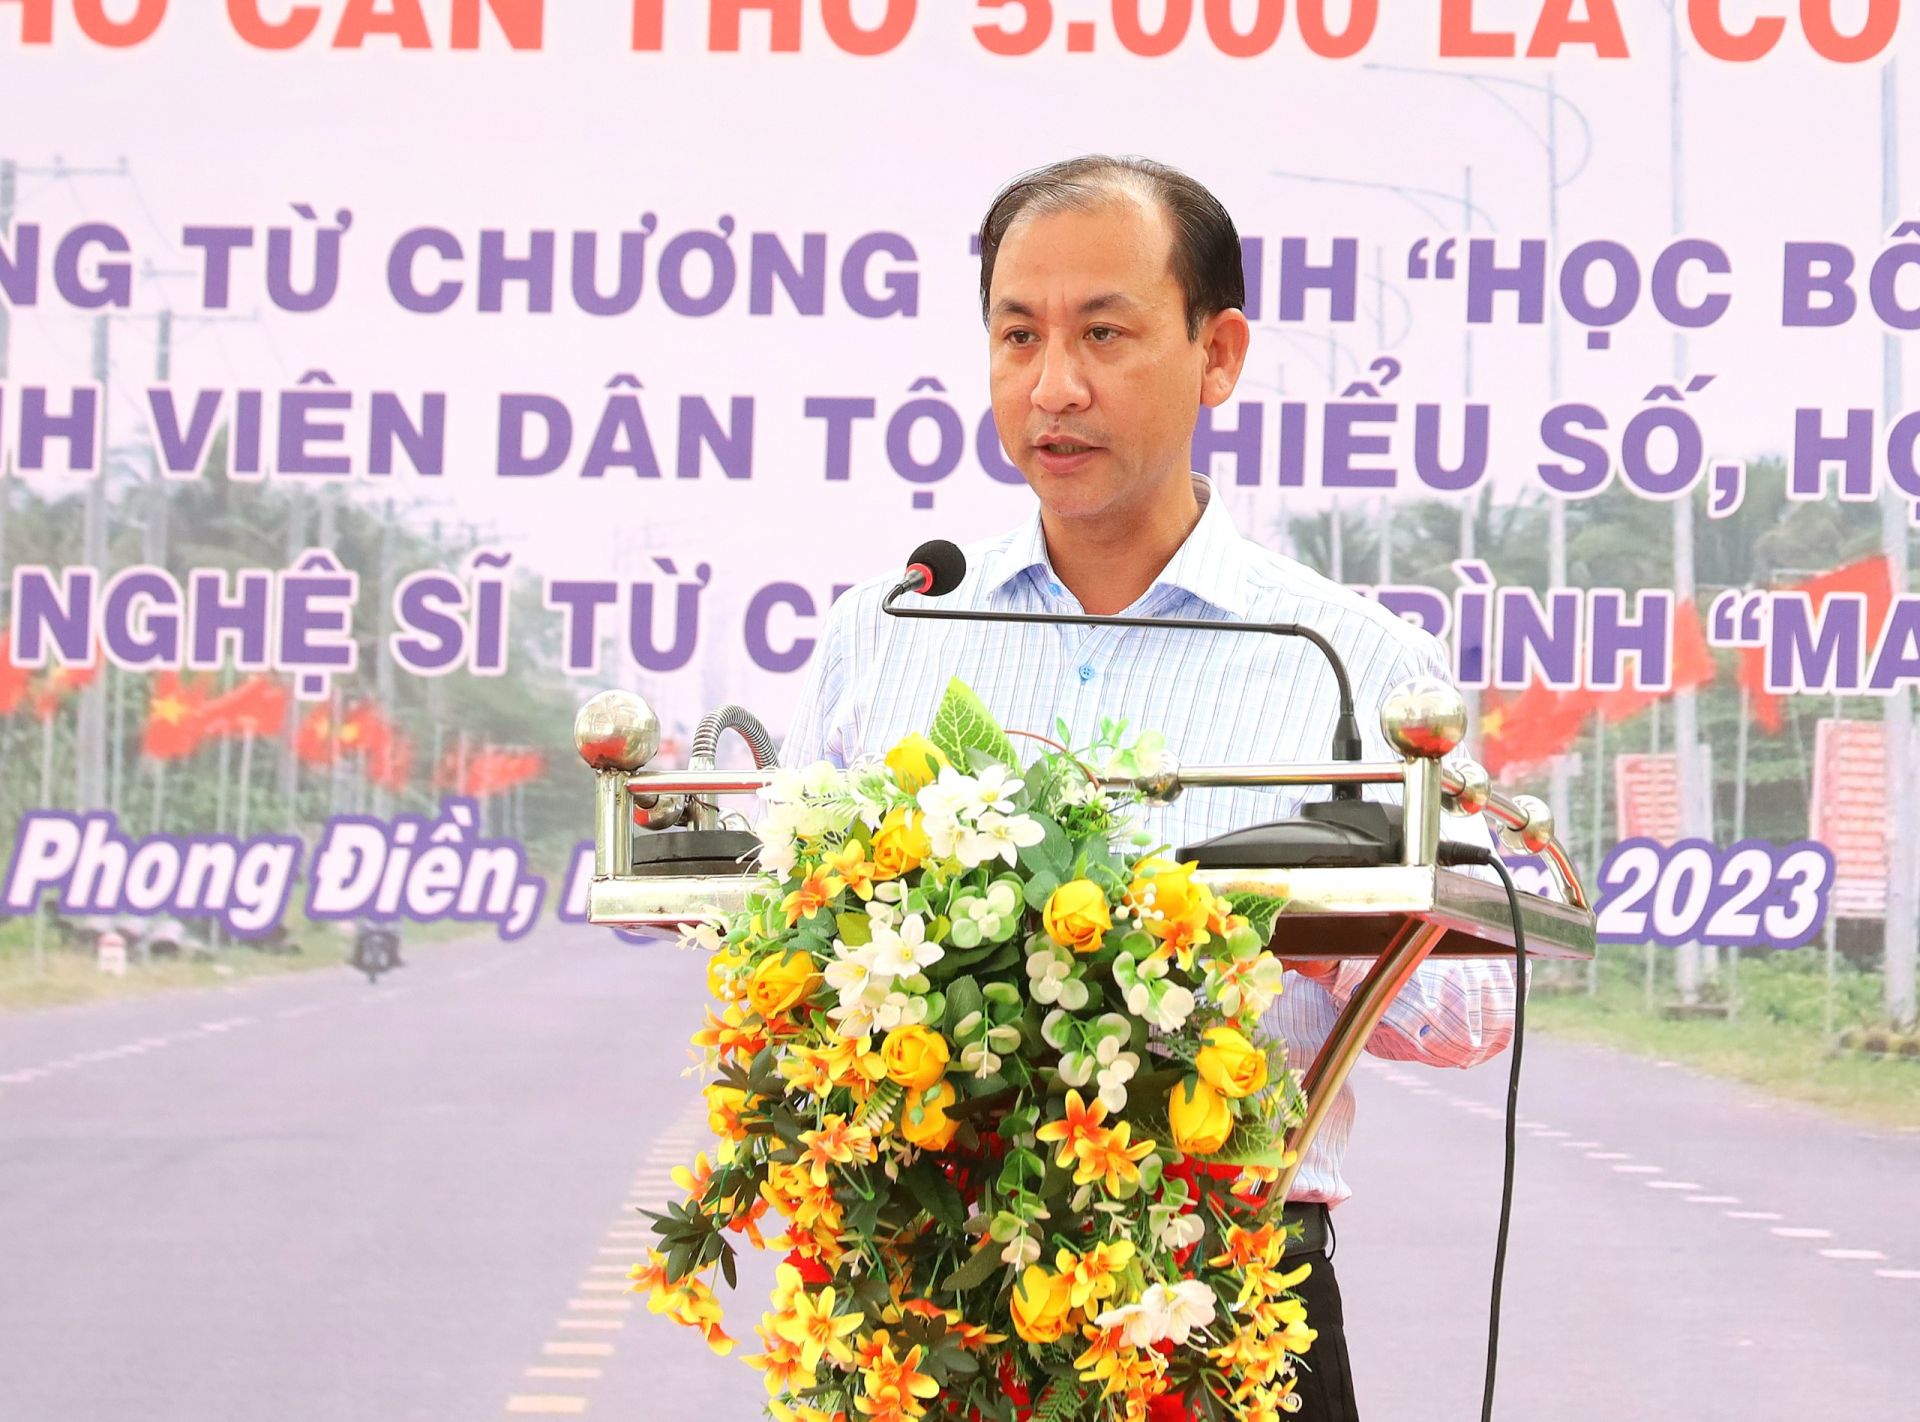 Ông Nguyễn Trung Nghĩa - Chủ tịch UBND huyện Phong Điền phát biểu tại buổi lễ.